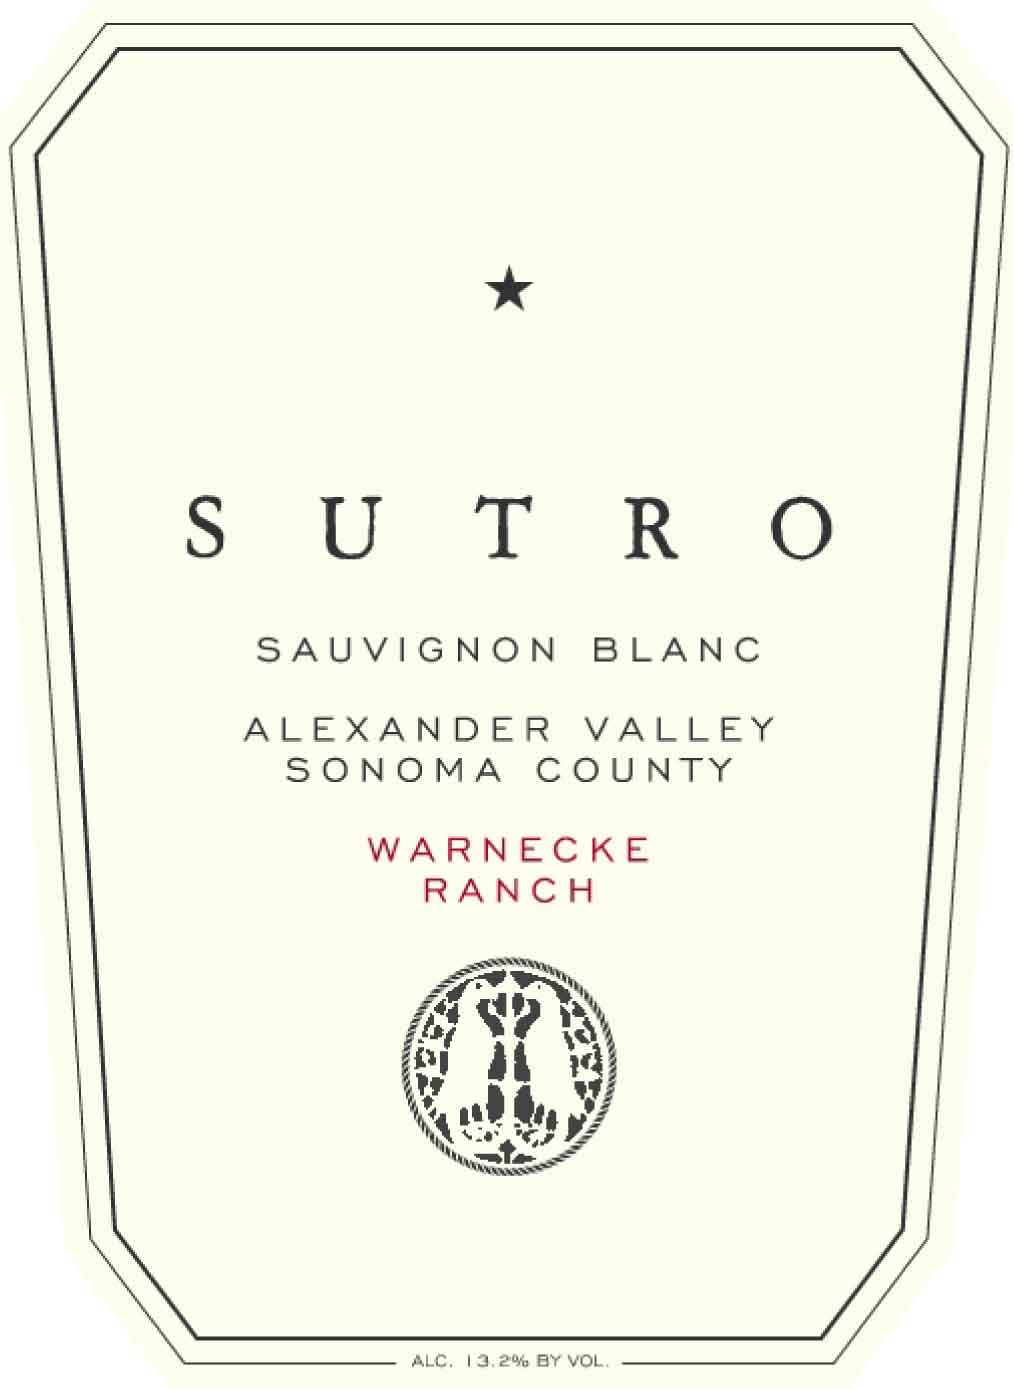 Sutro - Sauvignon Blanc label